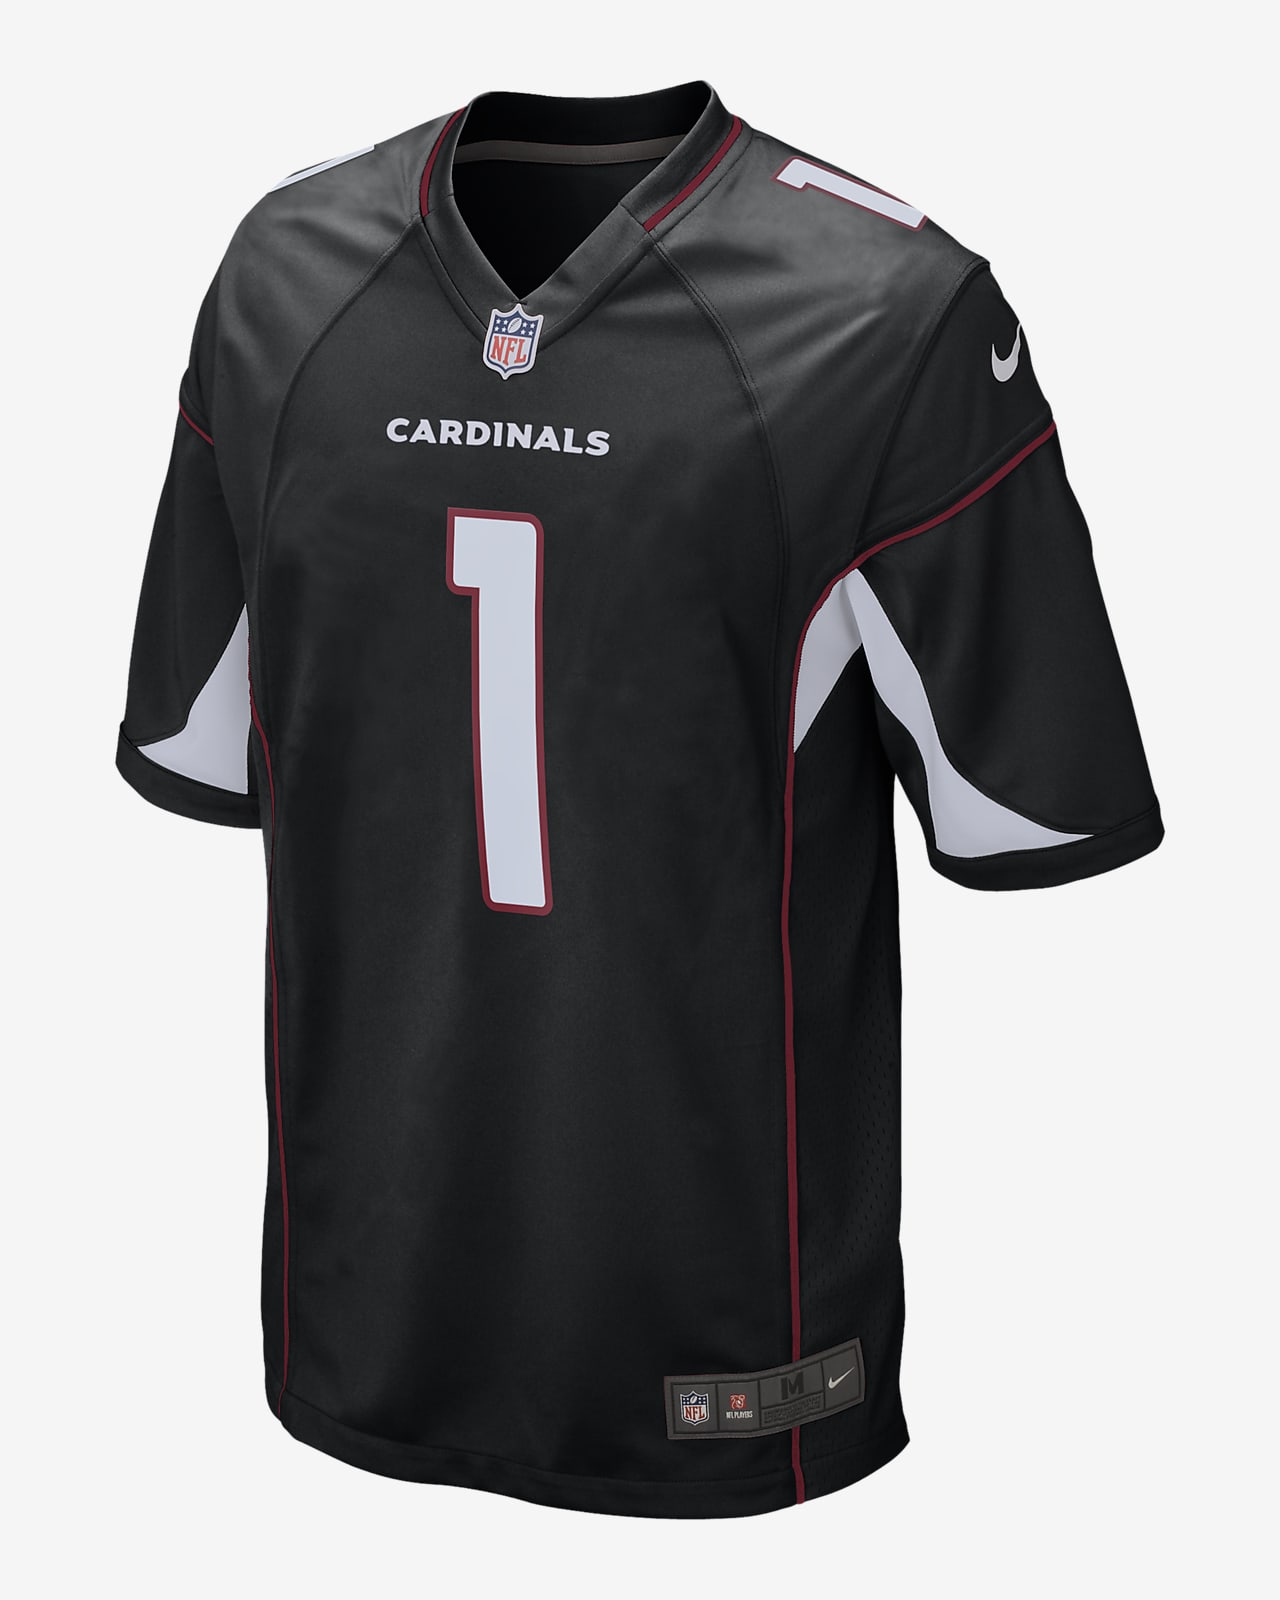 Nike Men's Kyler Murray Arizona Cardinals Game Jersey - Black